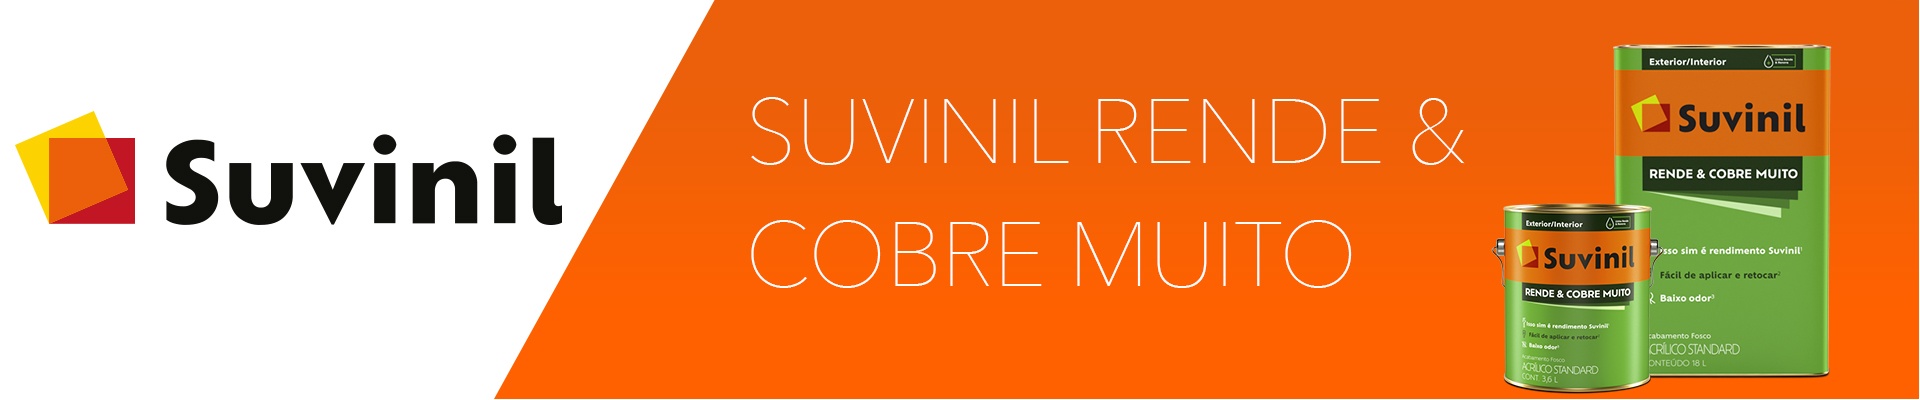 SUVINIL RENDE & COBRE MUITO